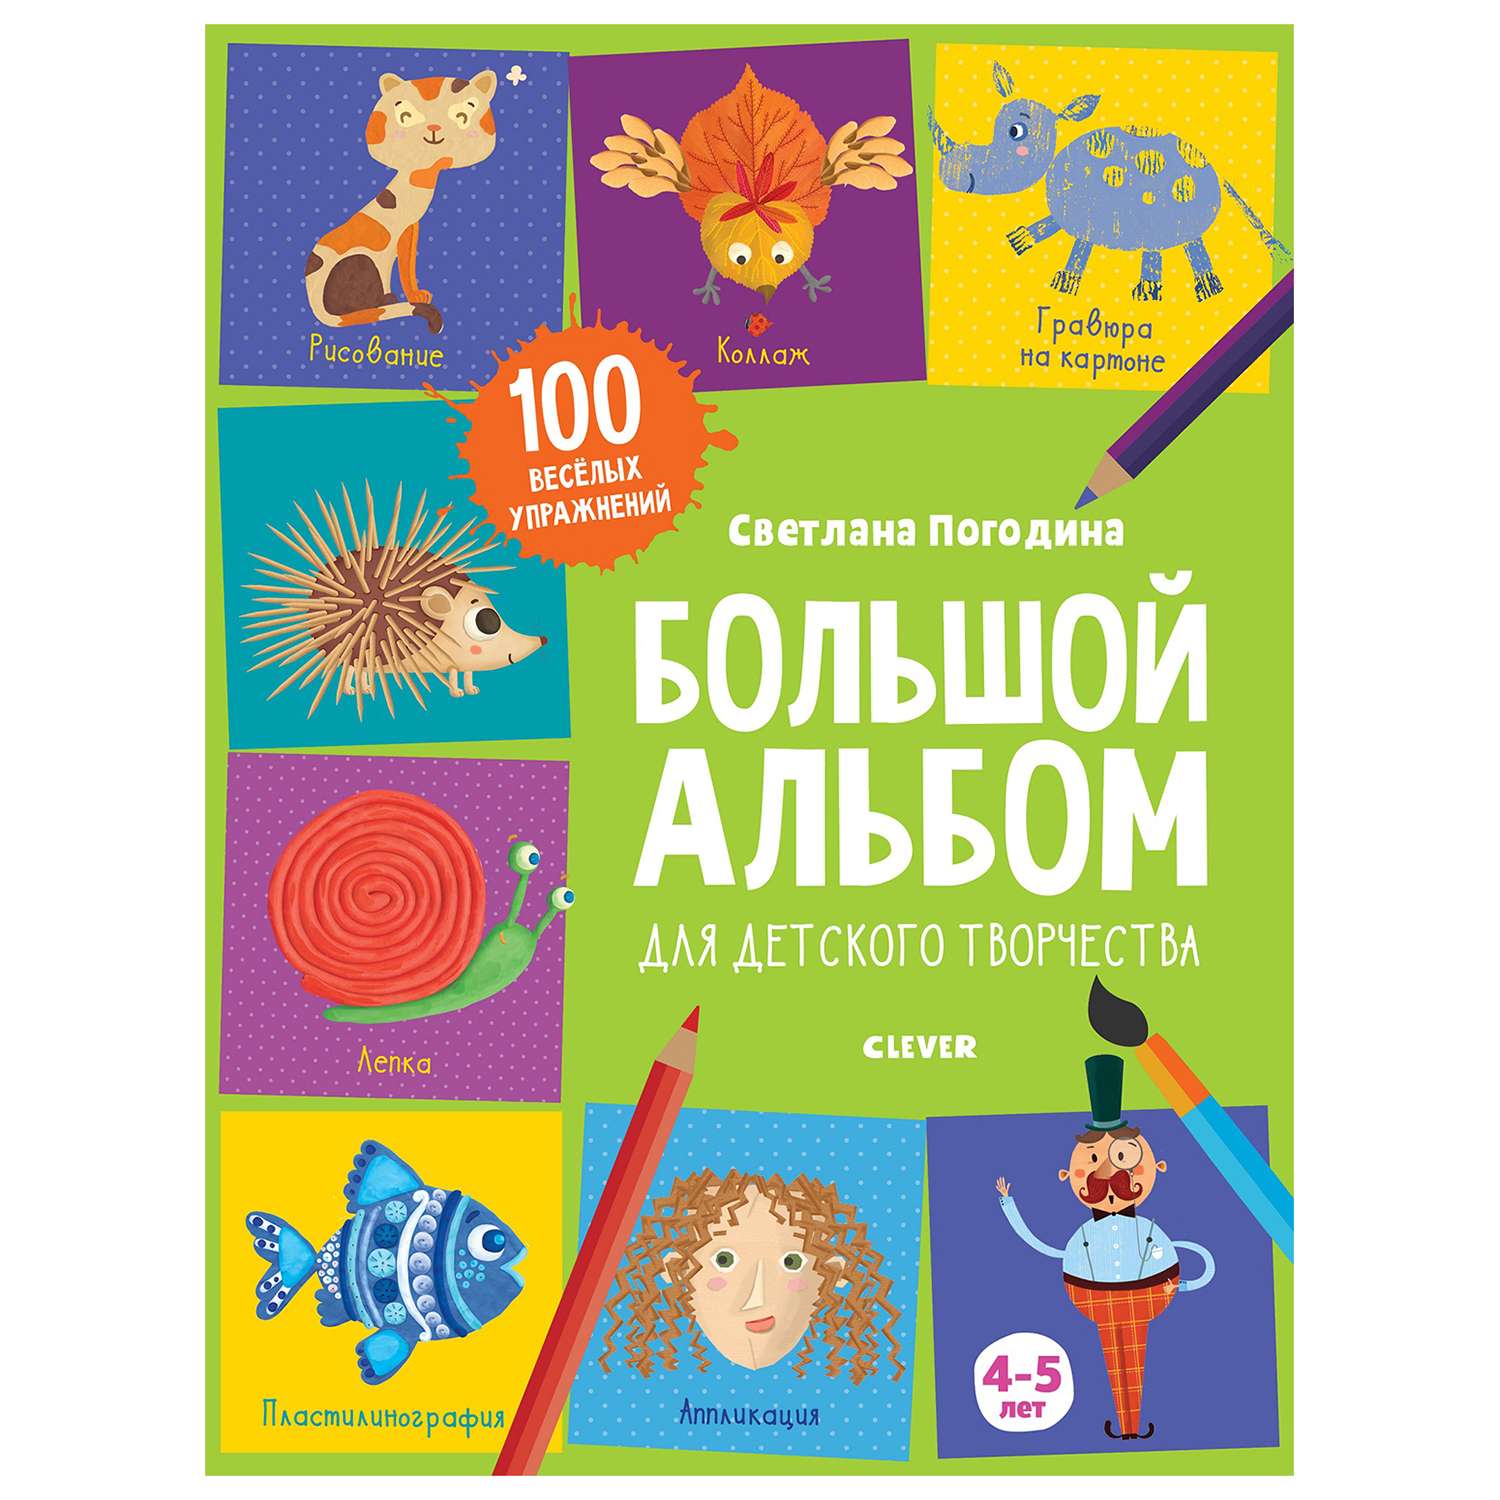 Книга Clever 1500 творческих заданий Большой альбом для детского творчества 4-5 лет - фото 1